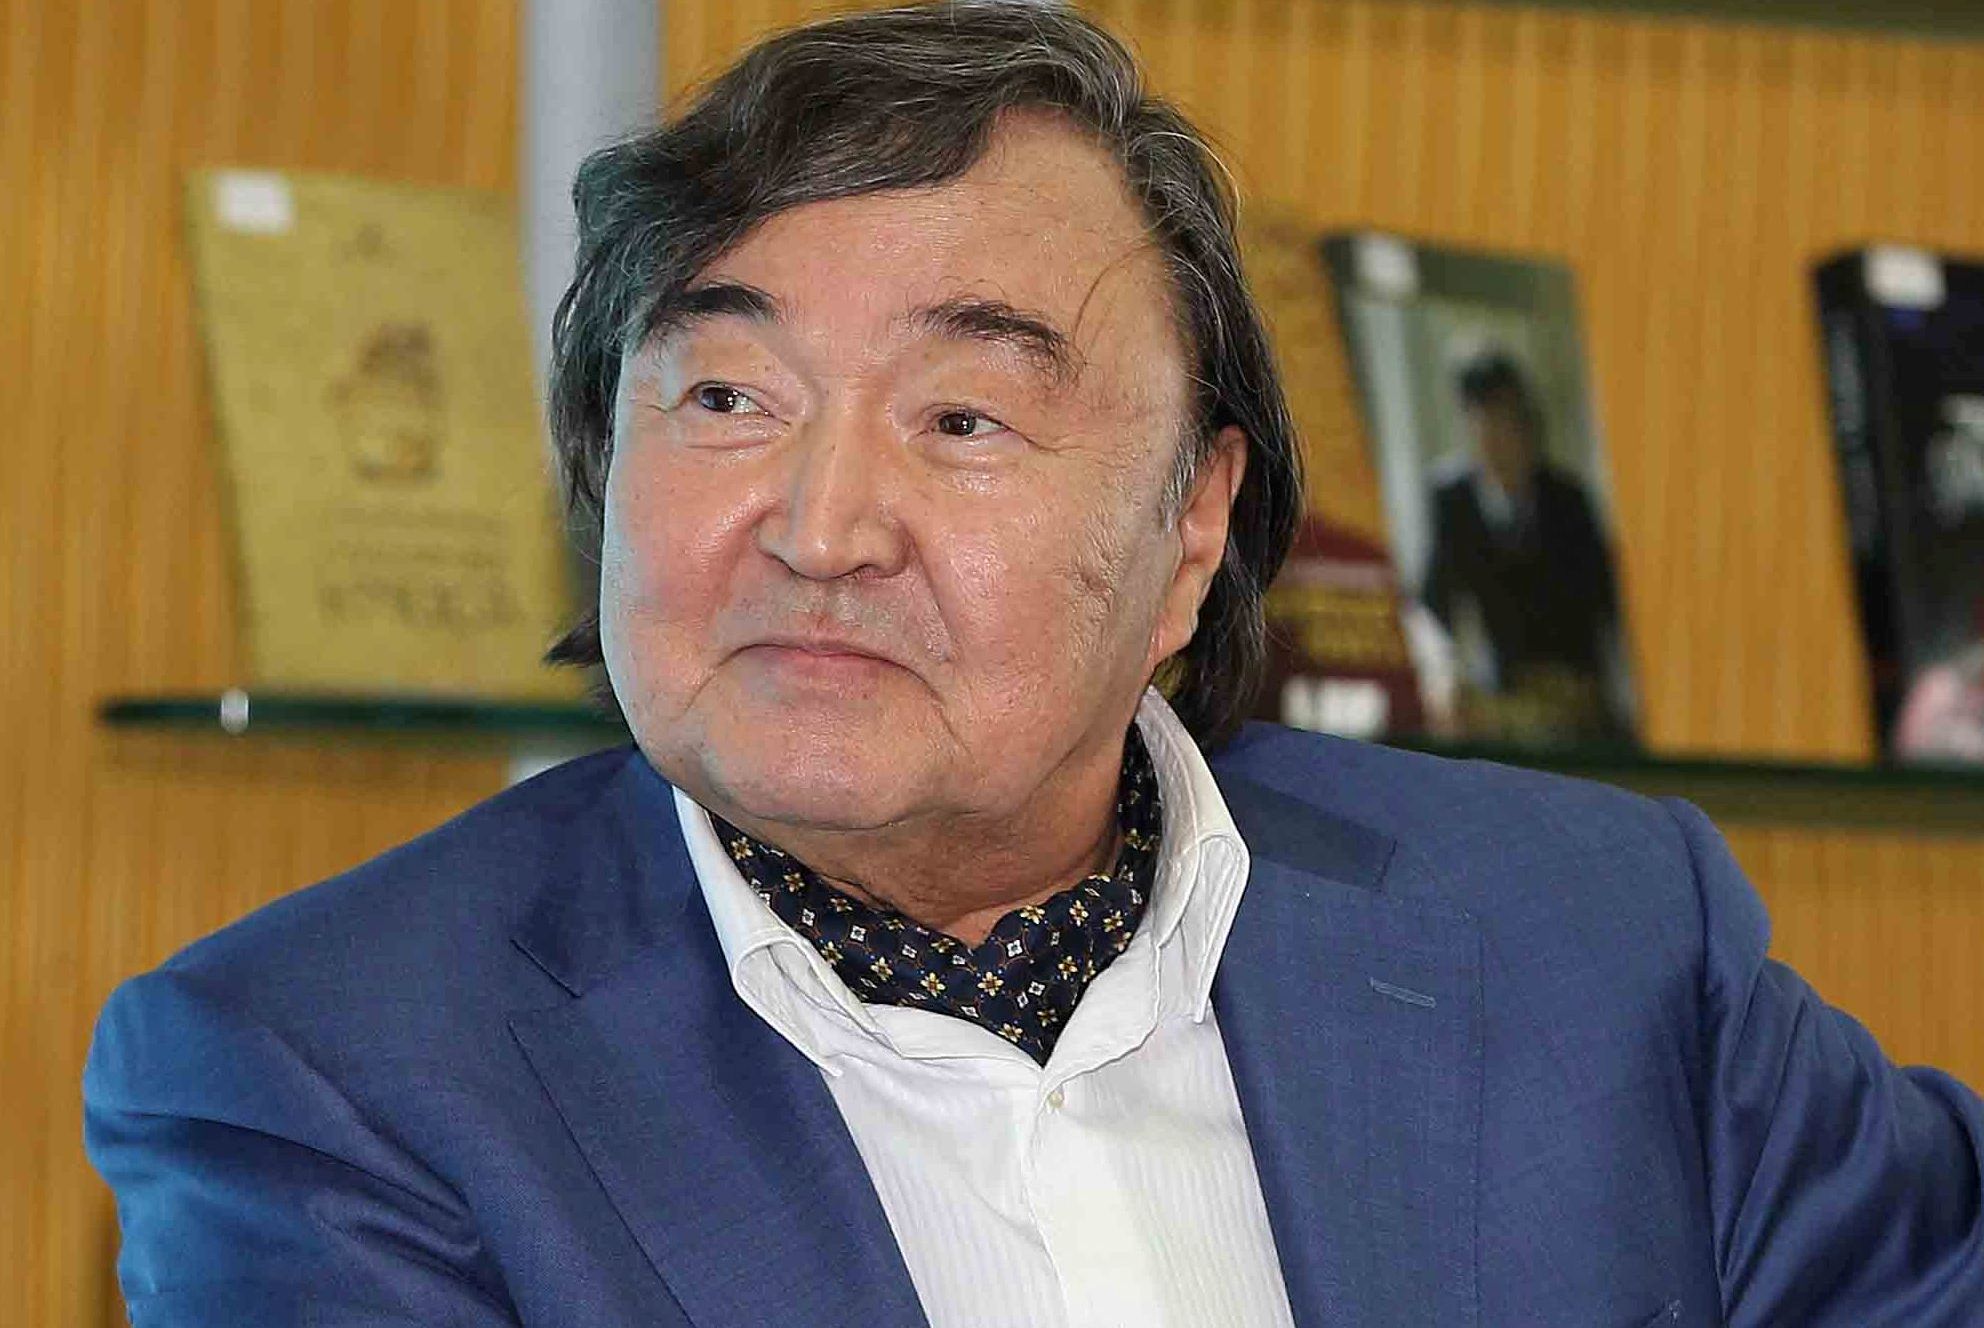 Государственный секретарь принял участие в чествовании Олжаса Сулейменова по случаю его 85-летия